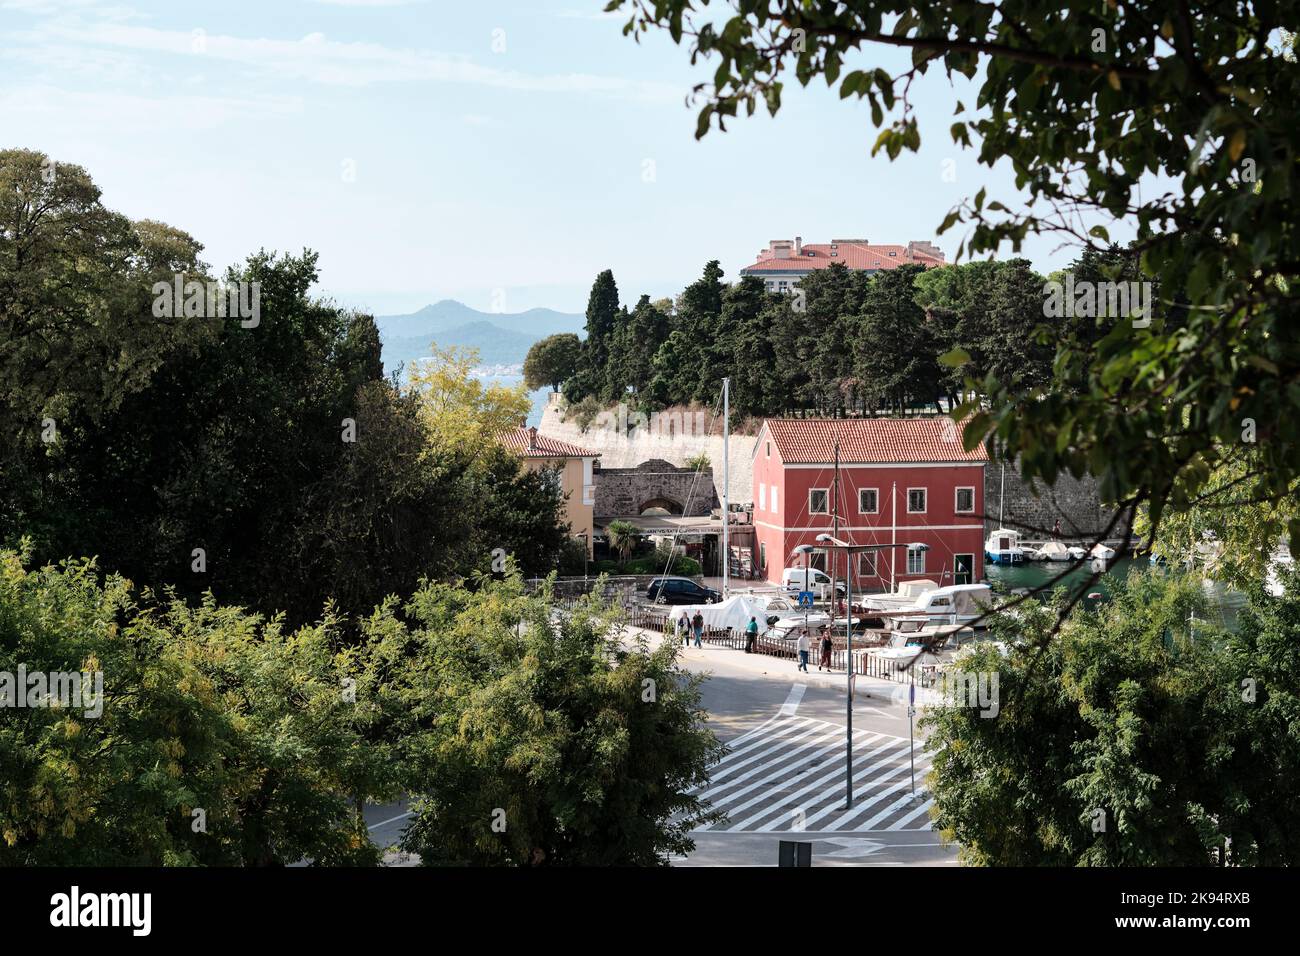 Le port de FOSA près de la porte de Venetian Land, dans les remparts de la ville du vieux Zadar, en Croatie, abrite le restaurant de fruits de mer Fosa depuis le haut des murs de la médeval Banque D'Images